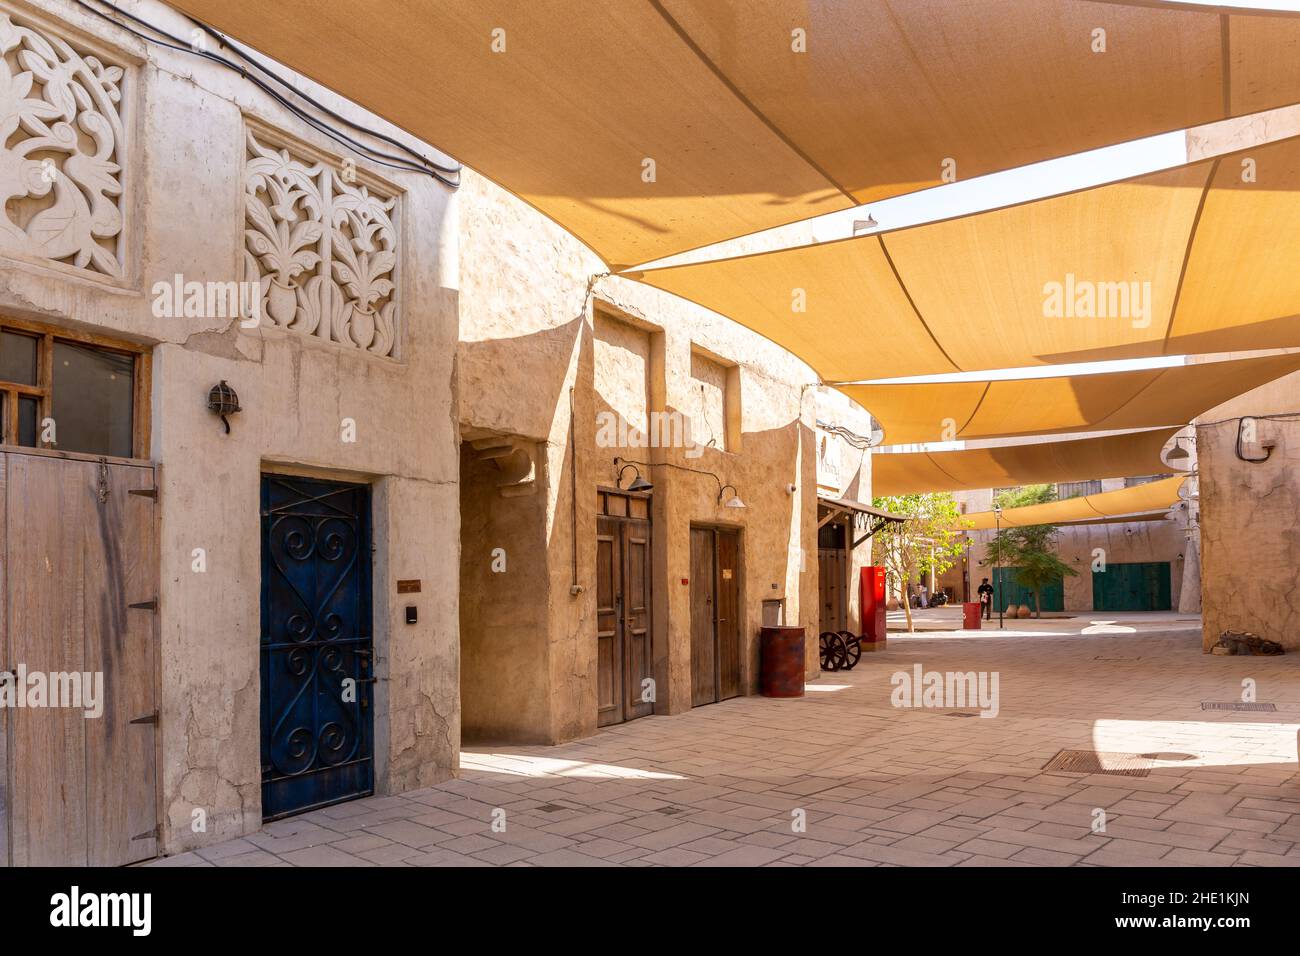 Al Fahidi quartier historique rue en pierre avec des bâtiments traditionnels de style arabe avec ornements et parasols au-dessus, Deira, Dubaï, Émirats Arabes Unis. Banque D'Images